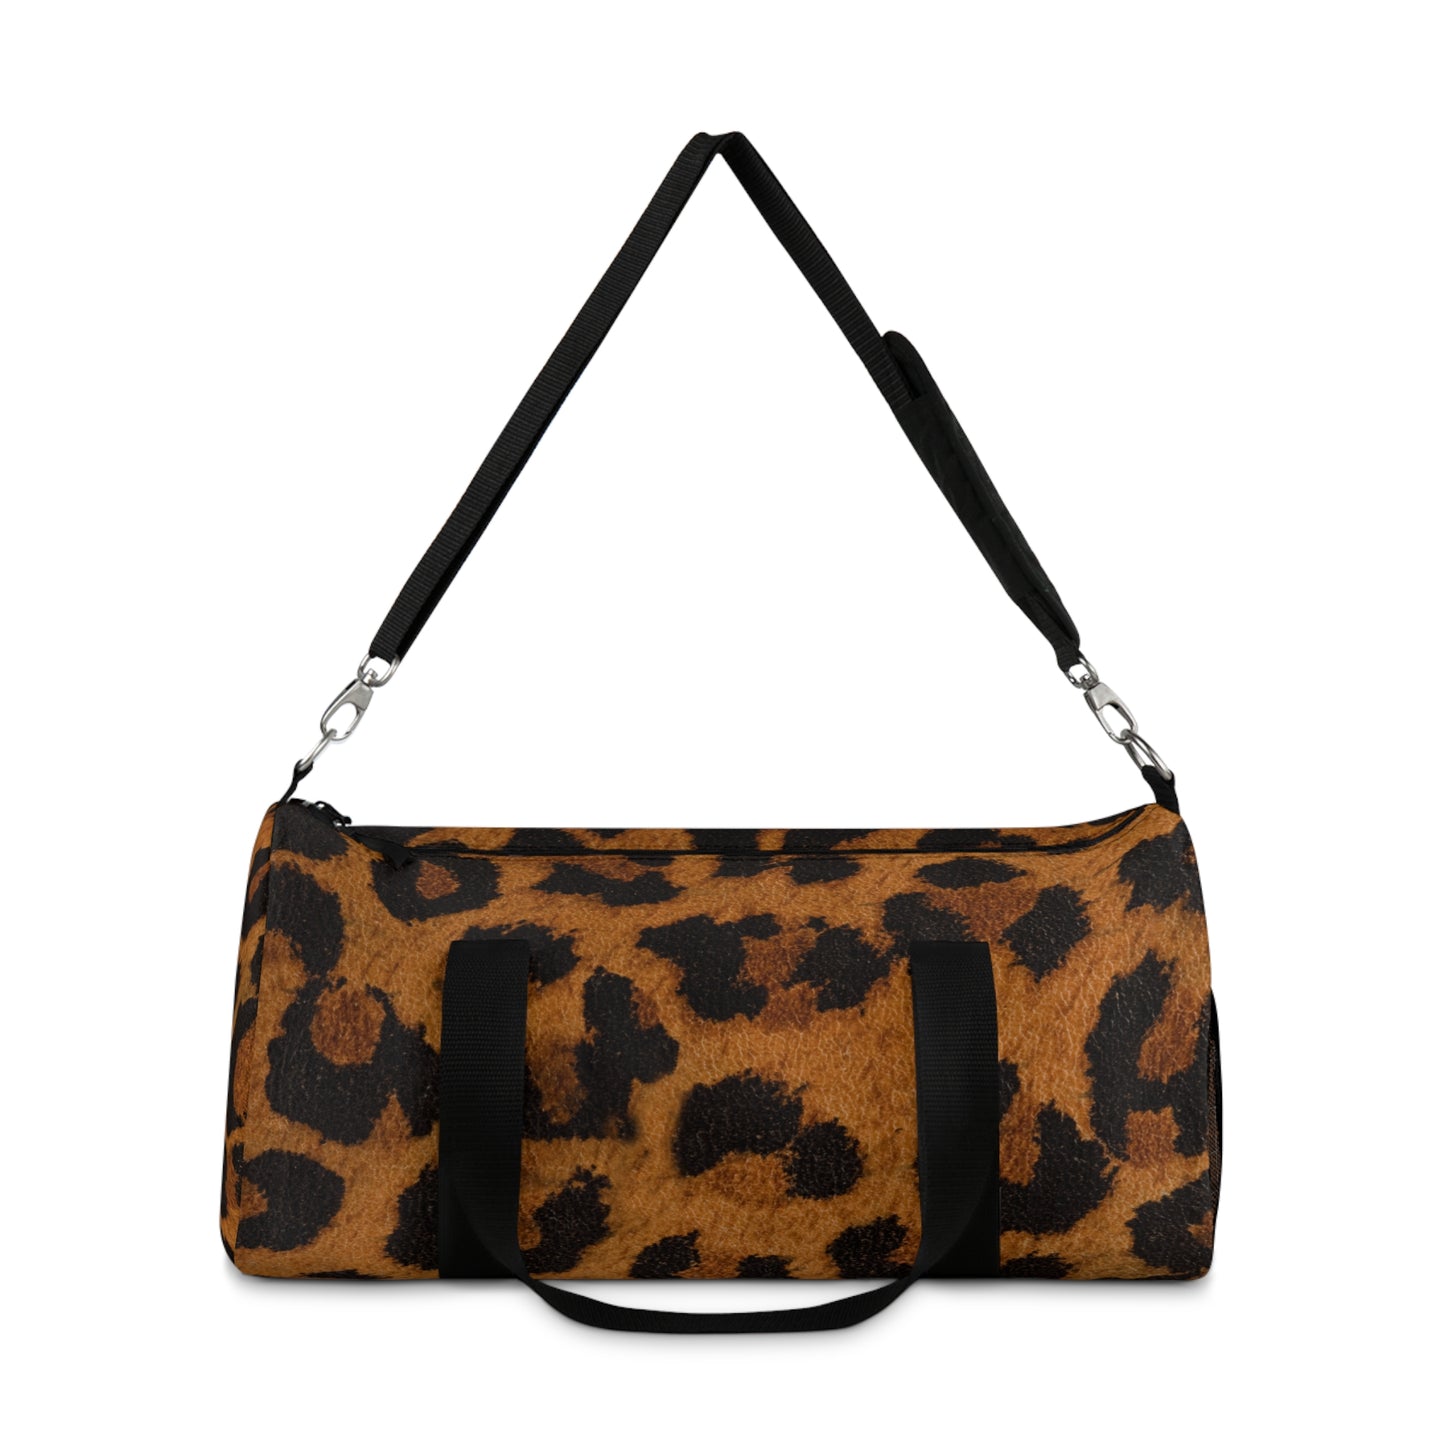 Into the Wild Cheetah Duffel Bag